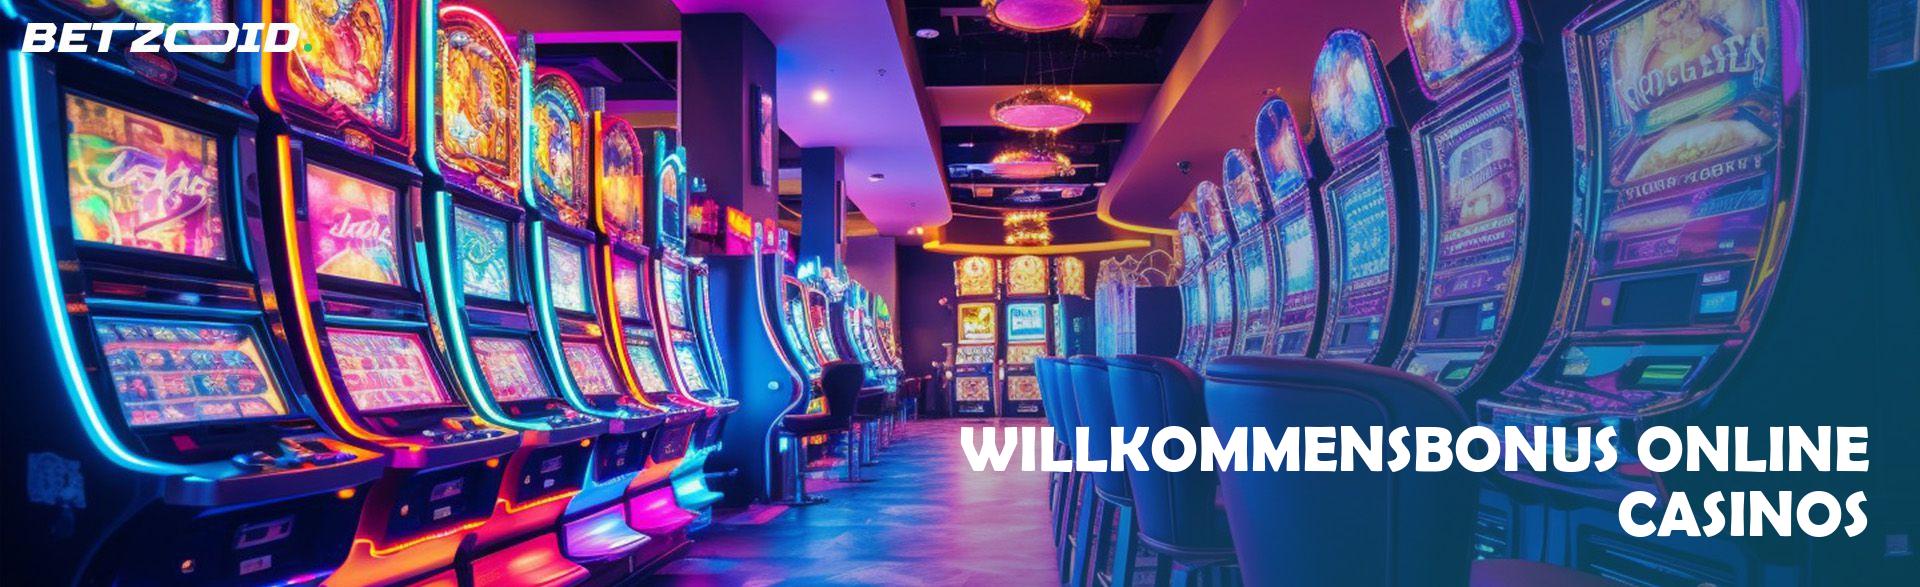 Willkommensbonus Online Casinos.